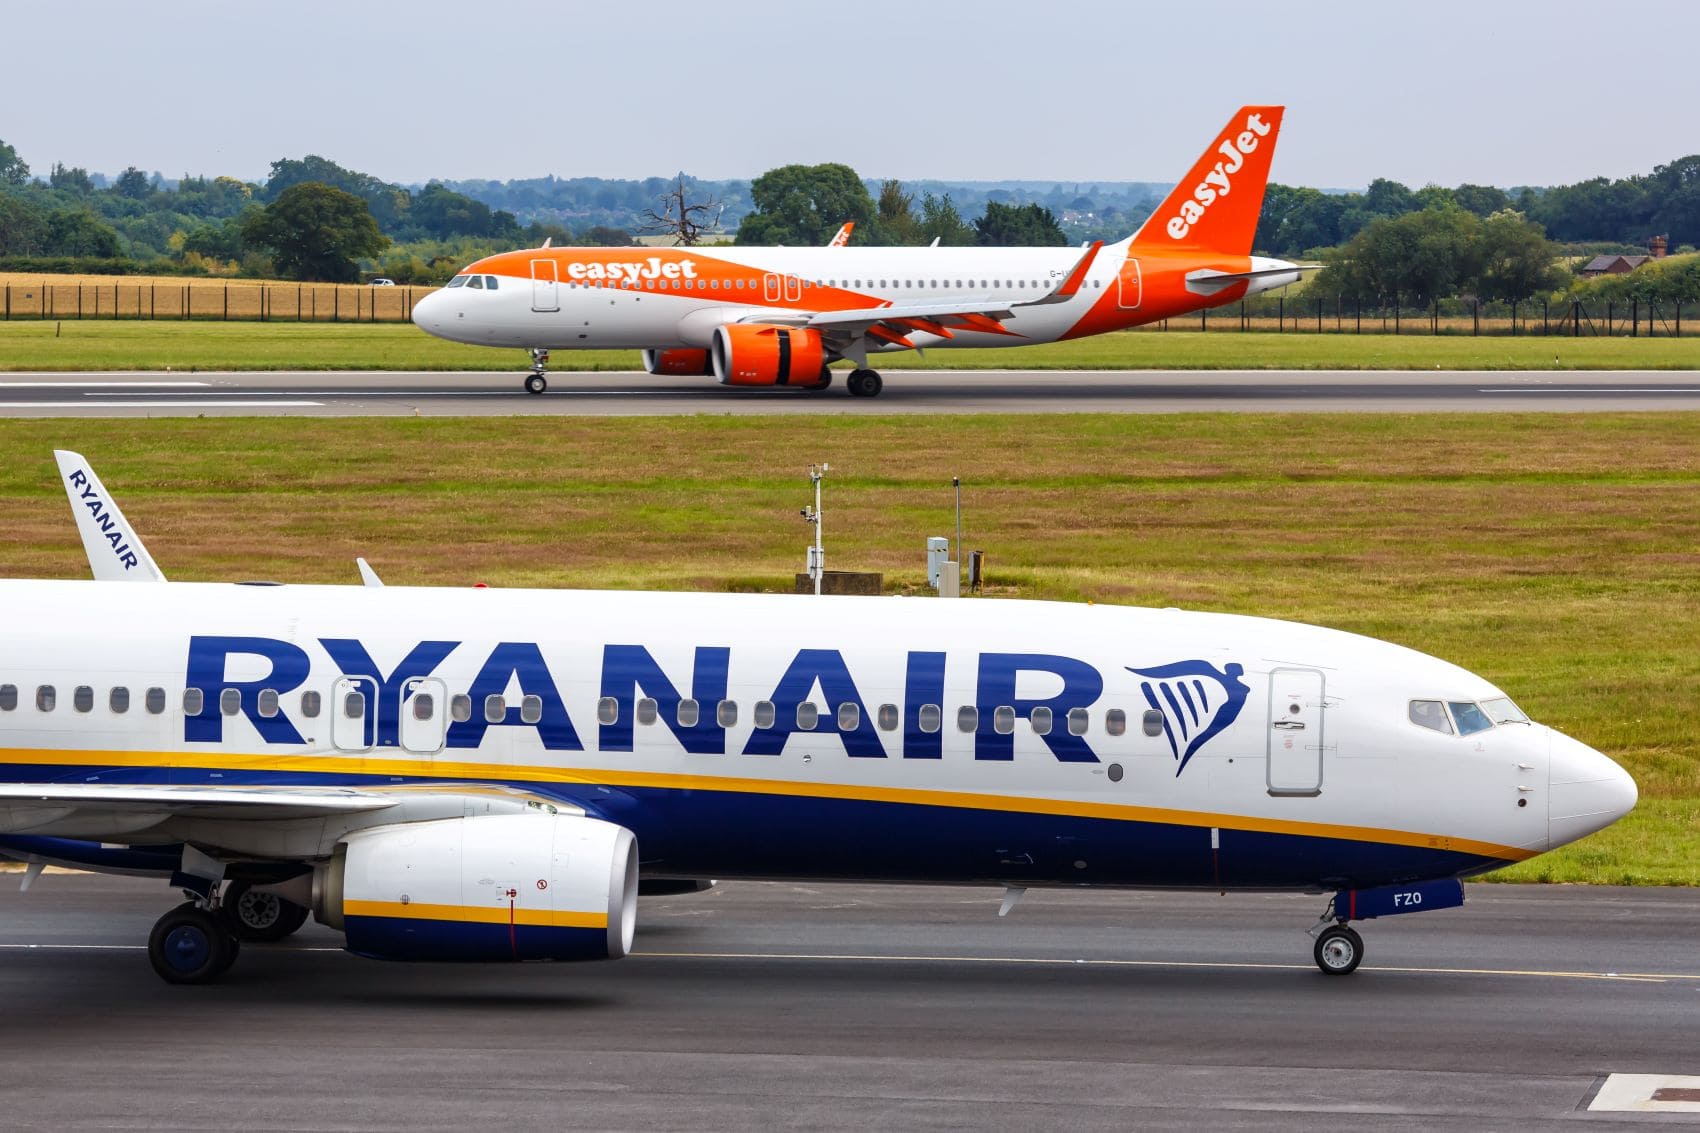 Flugzeuge von Ryanair und Easyjet auf Rollbahn 